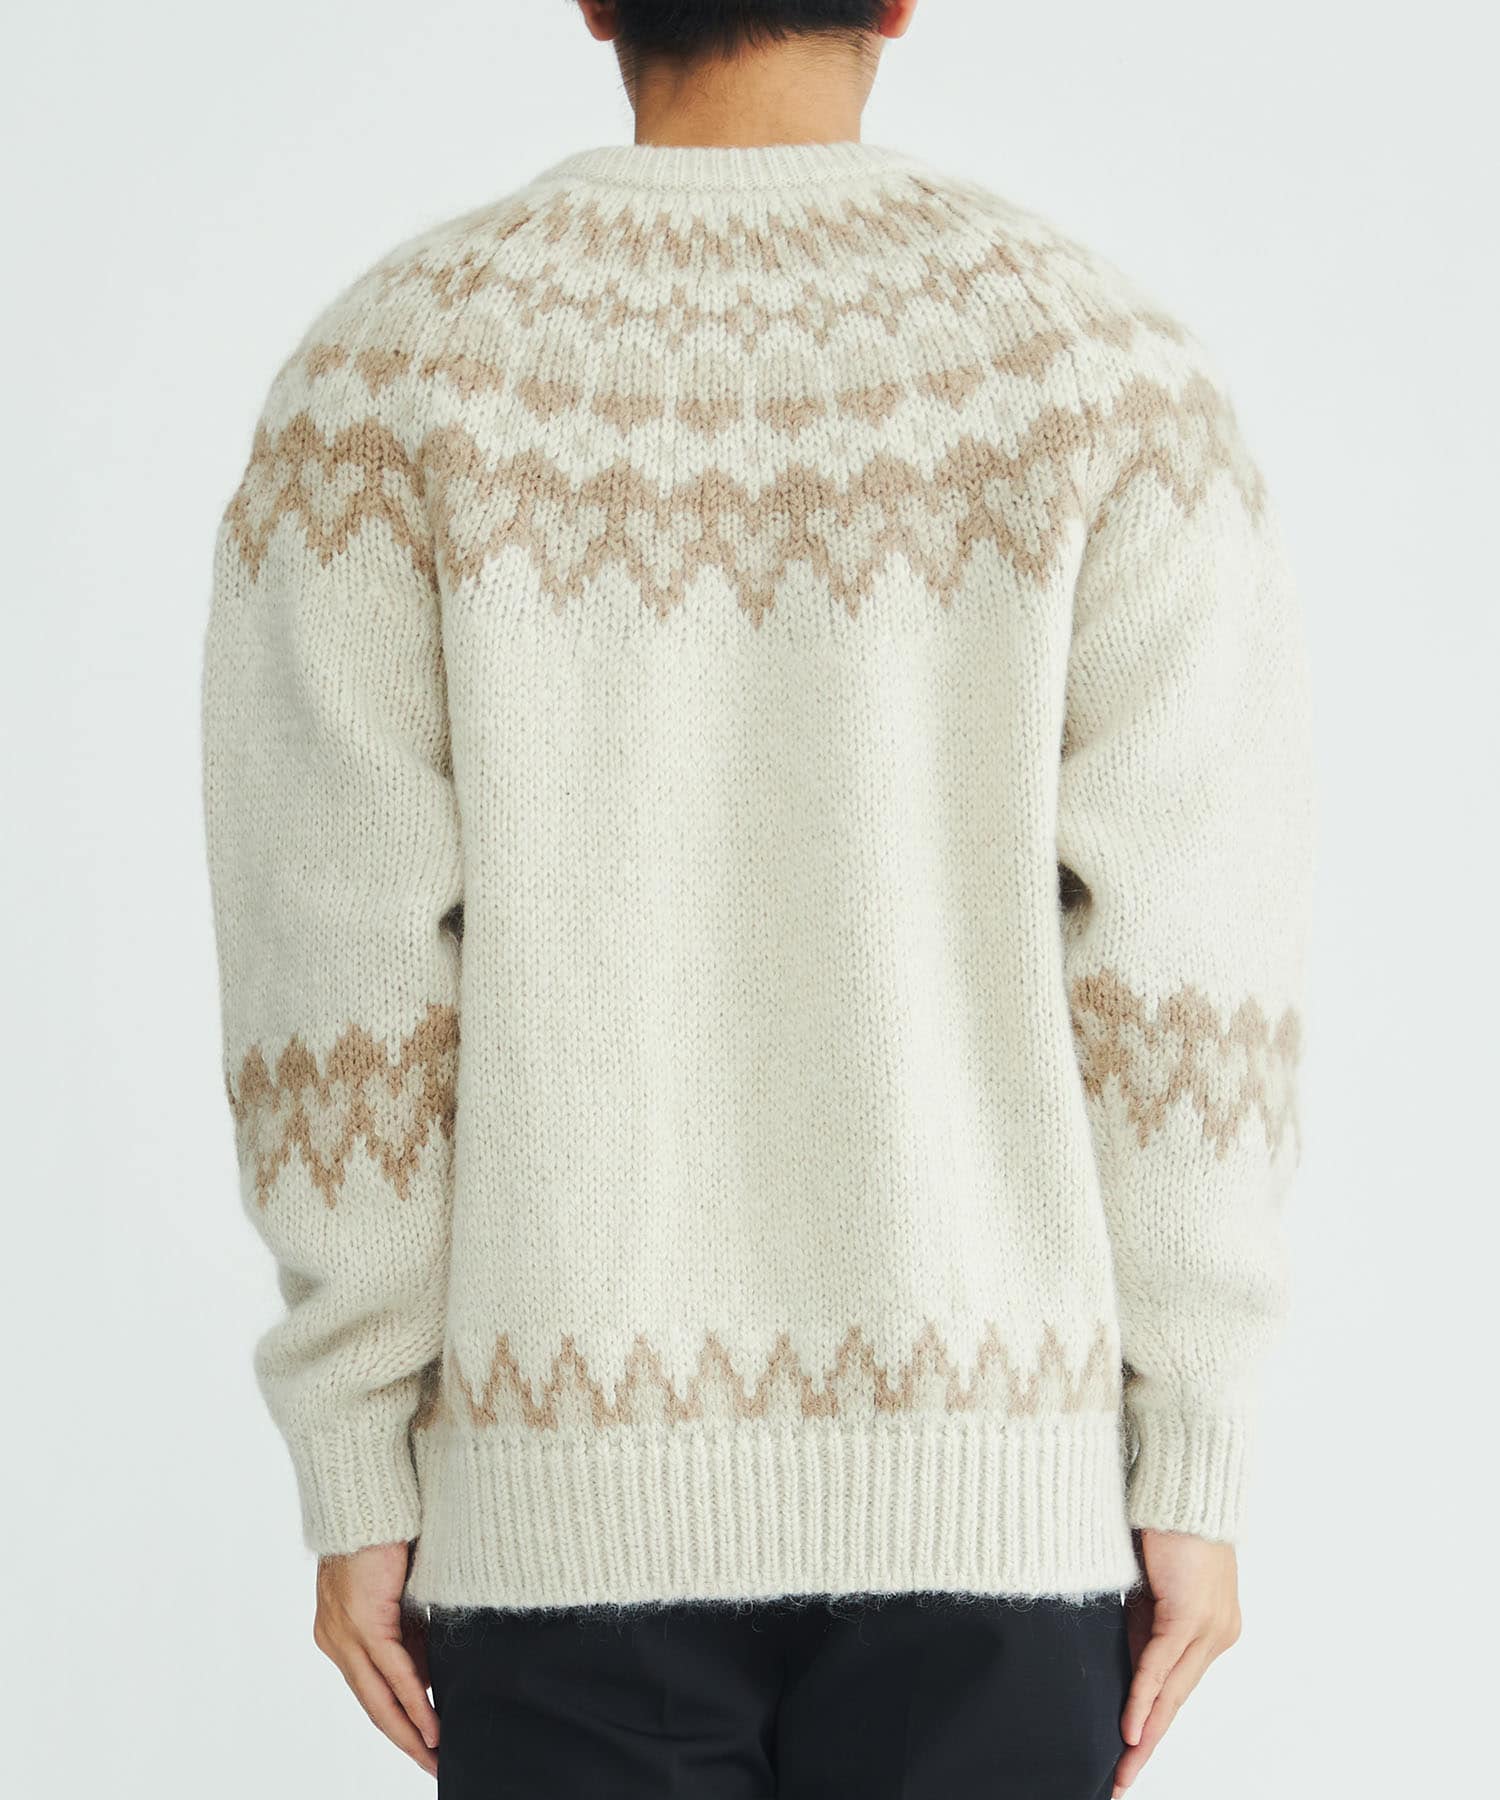 BATONERBATONER “Mohair nordic crew neck knit” - ニット/セーター